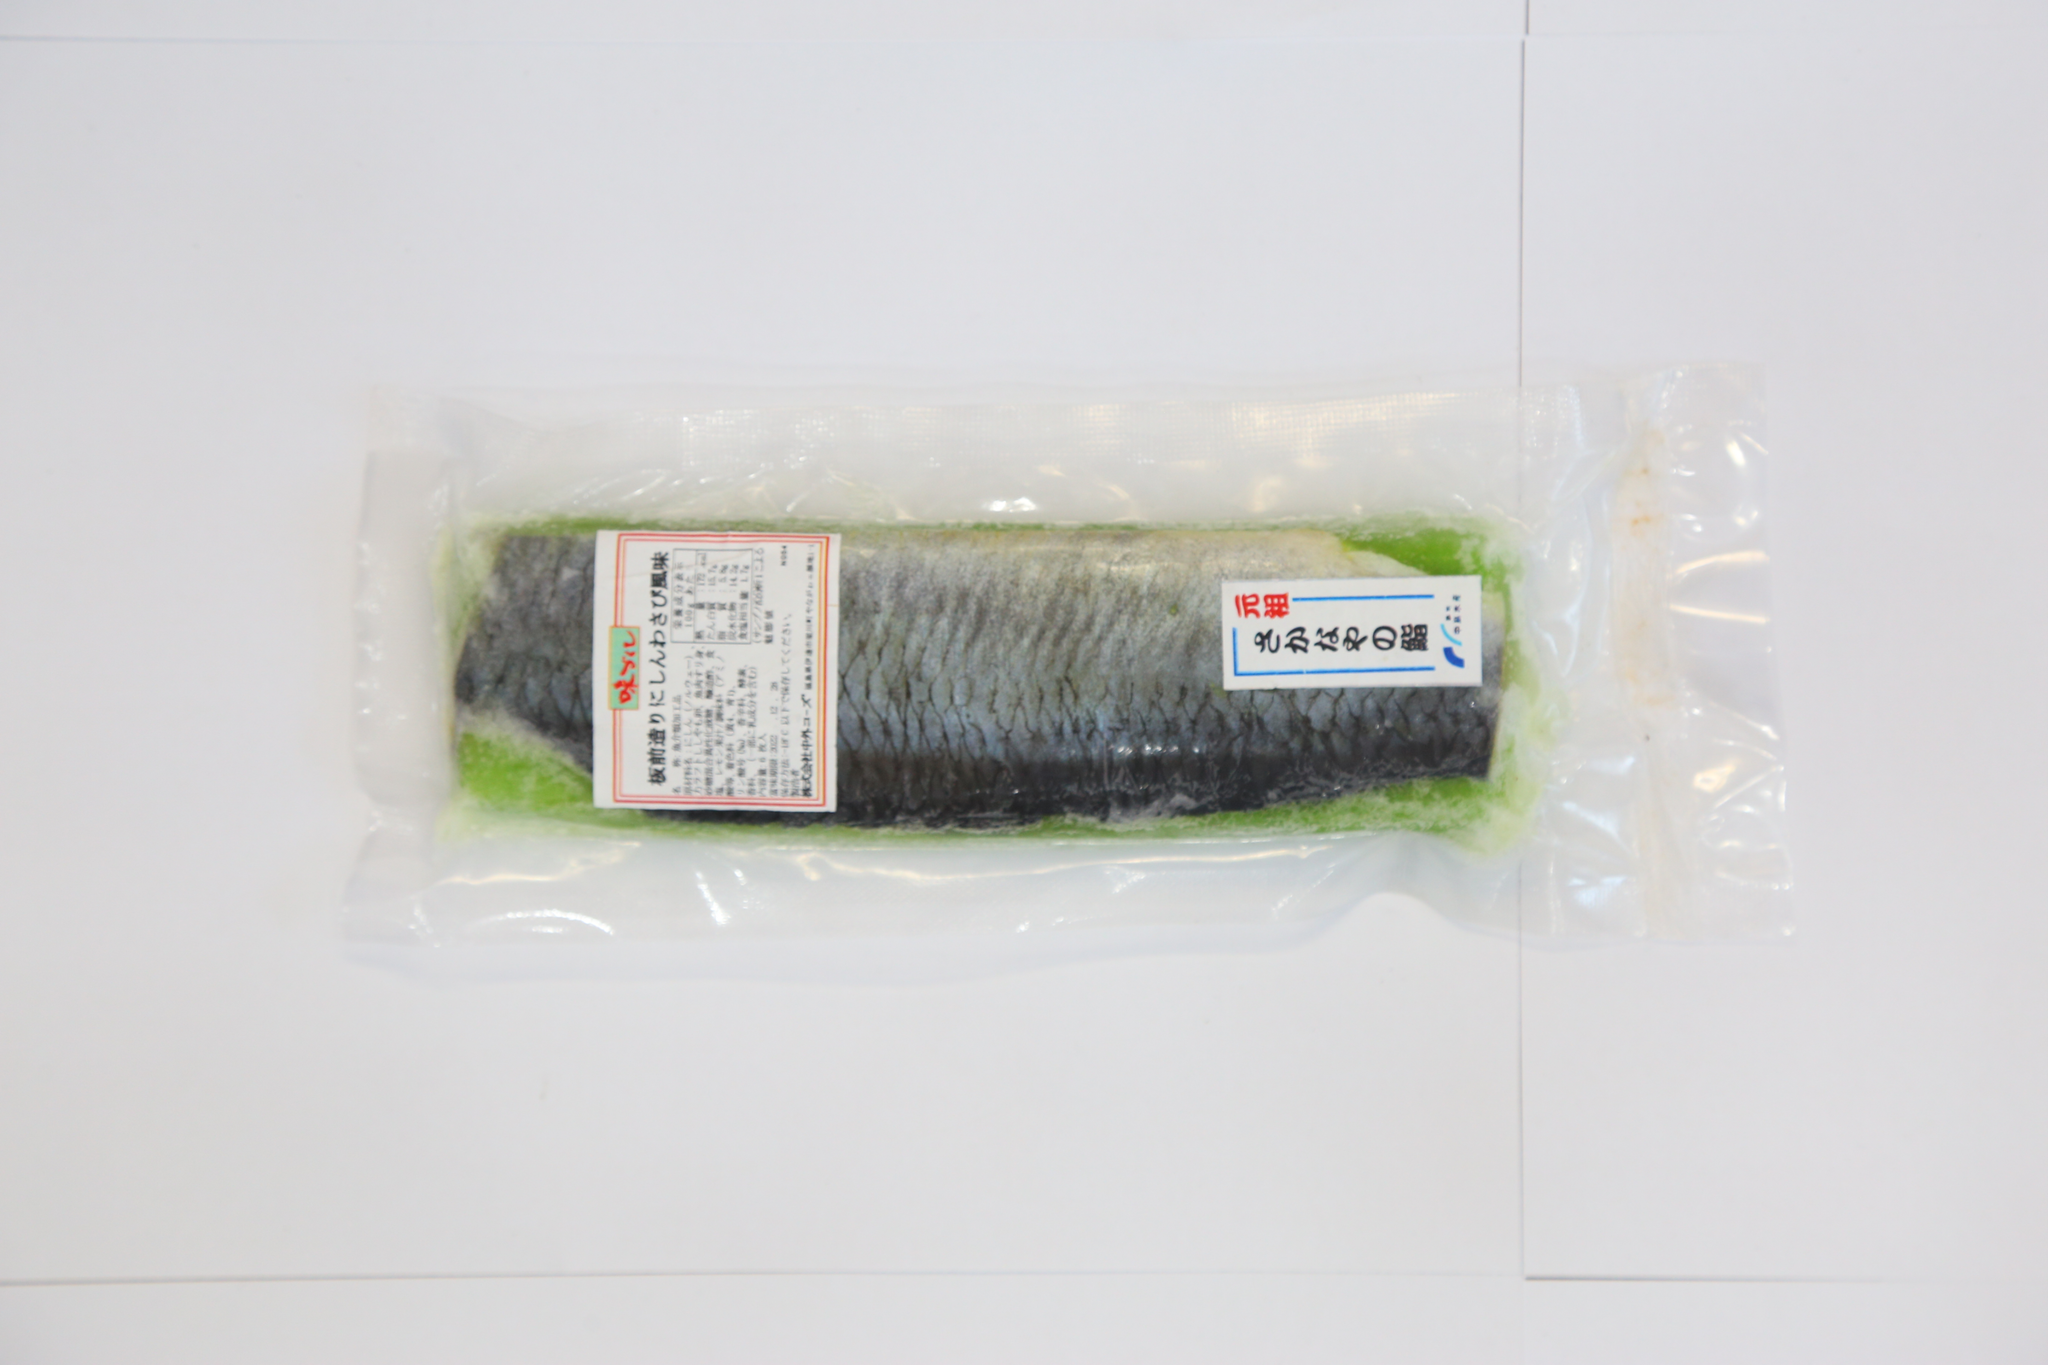  CHUUGAI FOODS- Cá trích ép trứng đông lạnh xanh 